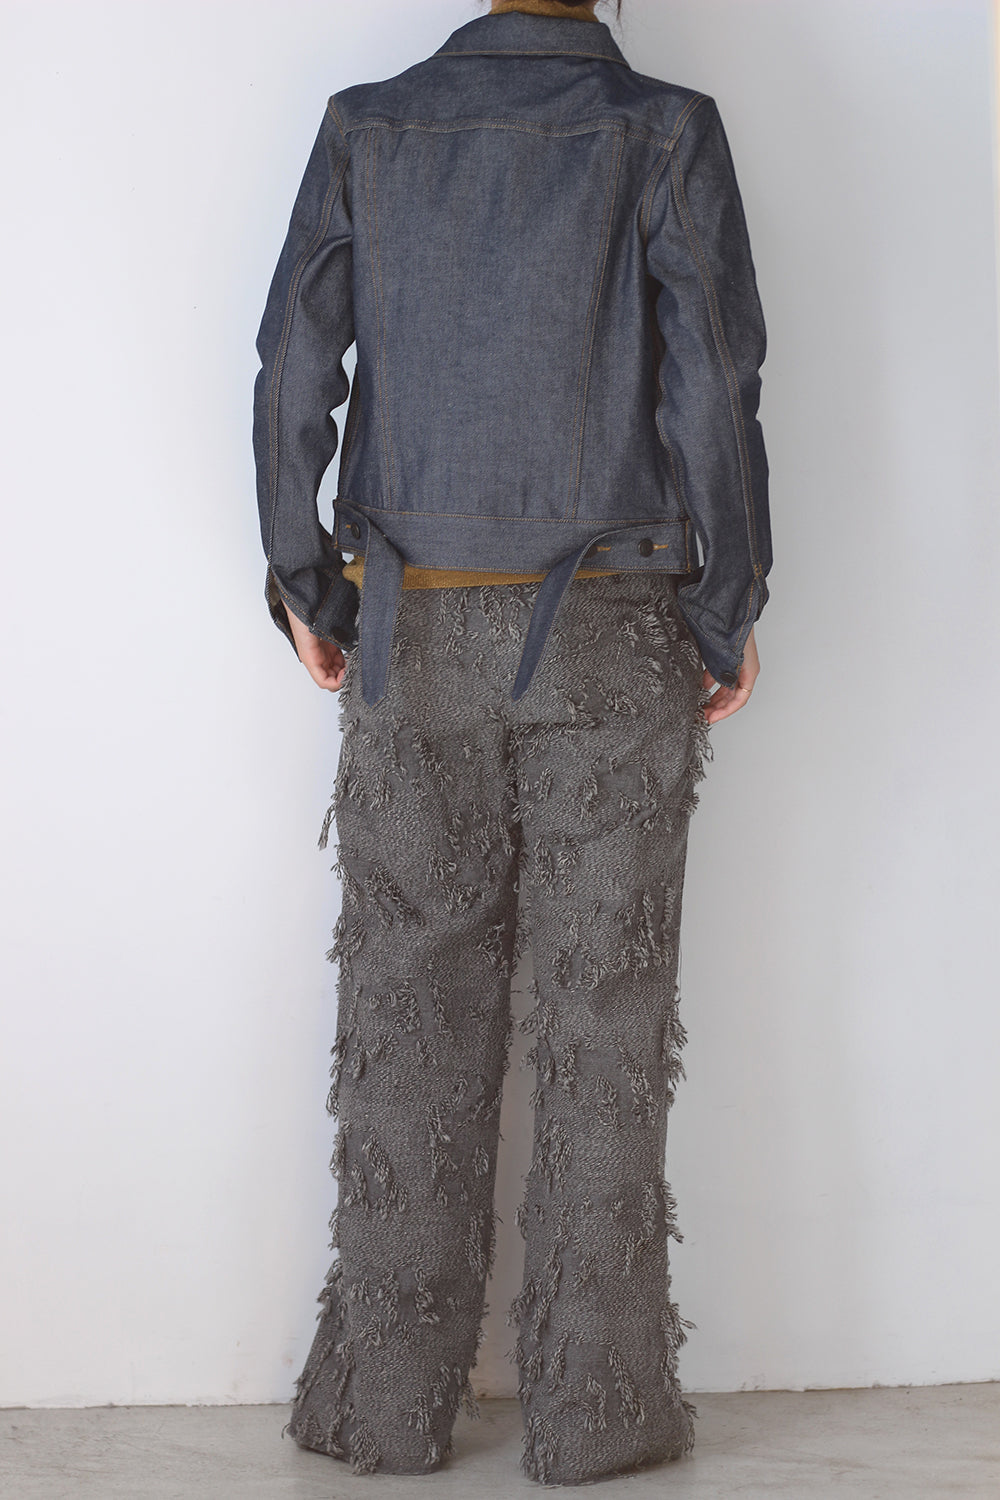 ERIKO KATORI "ripped wool pants" (gray)